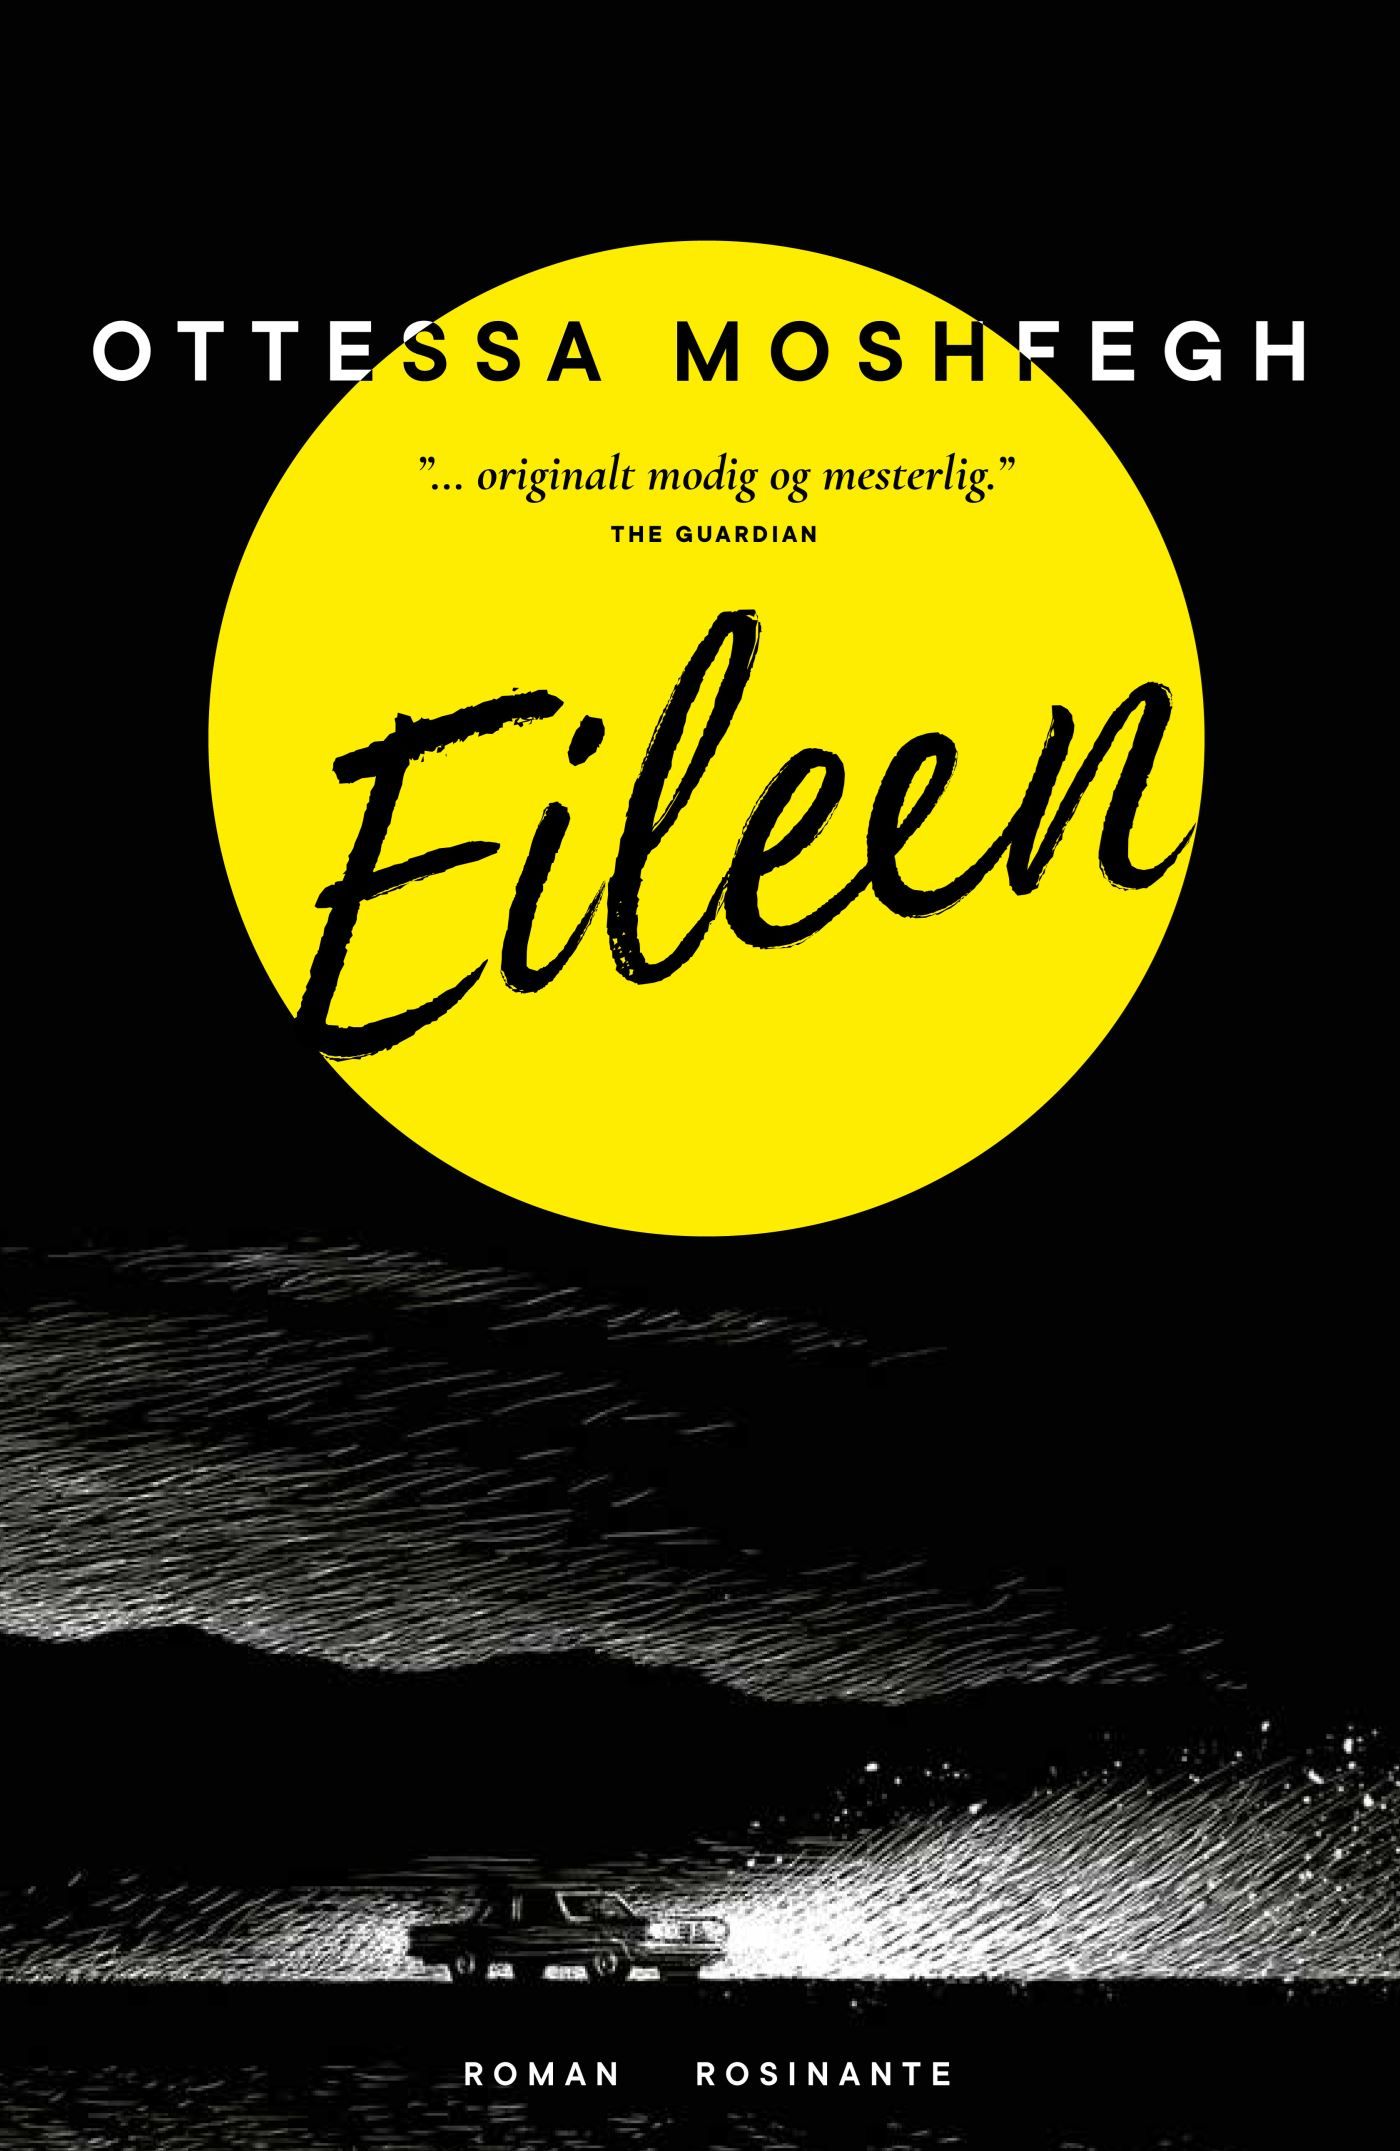 Eileen, ljudbok av Ottessa Moshfegh